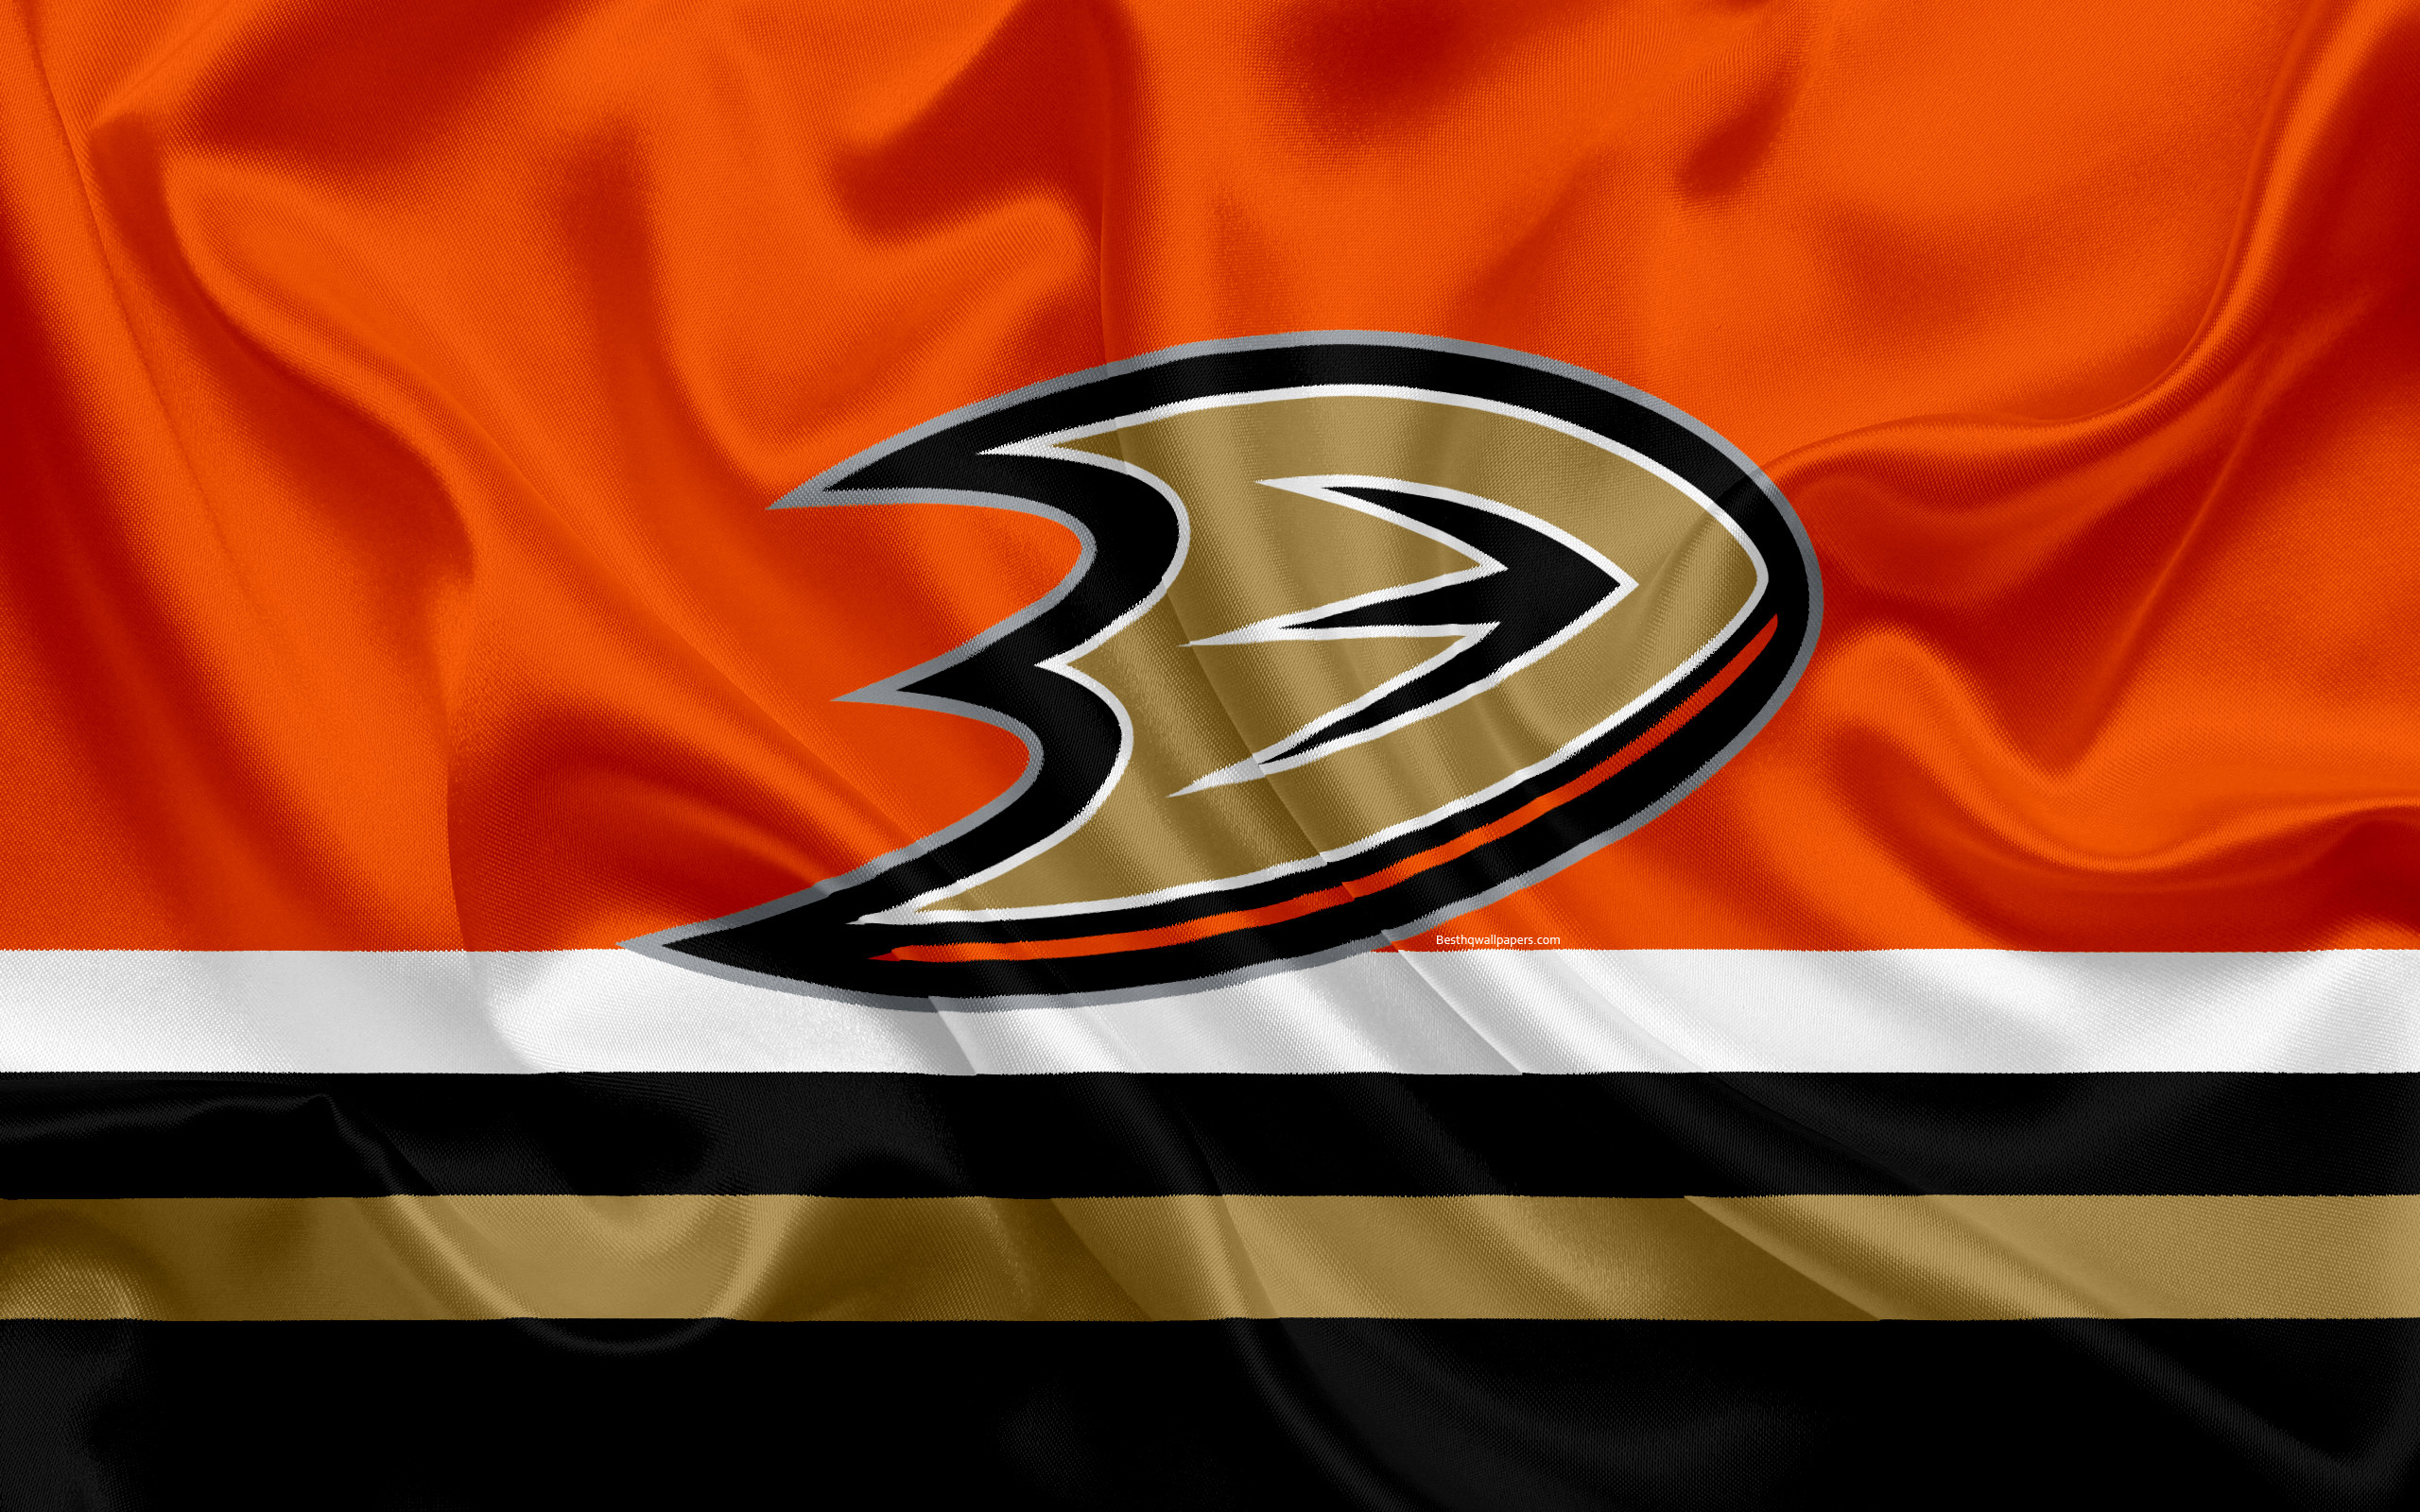 2560x1600 Anaheim Ducks, hockey club, NHL, emblem, logo, National Hockey League,